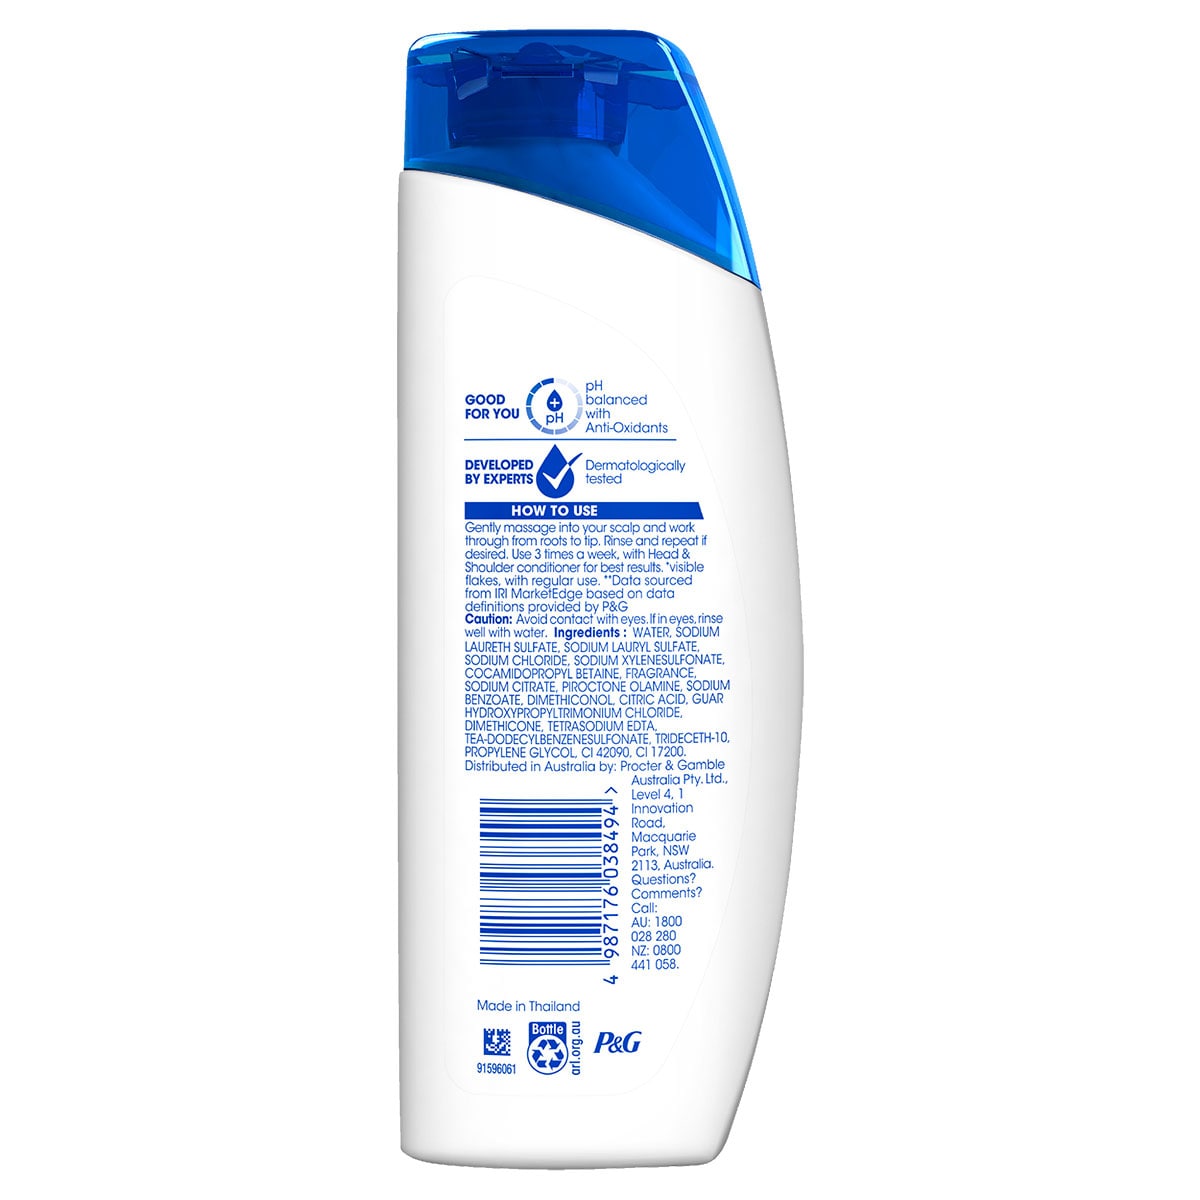 Head & Shoulders Clean & Balanced Anti-Dandruff Shampoo 200ml